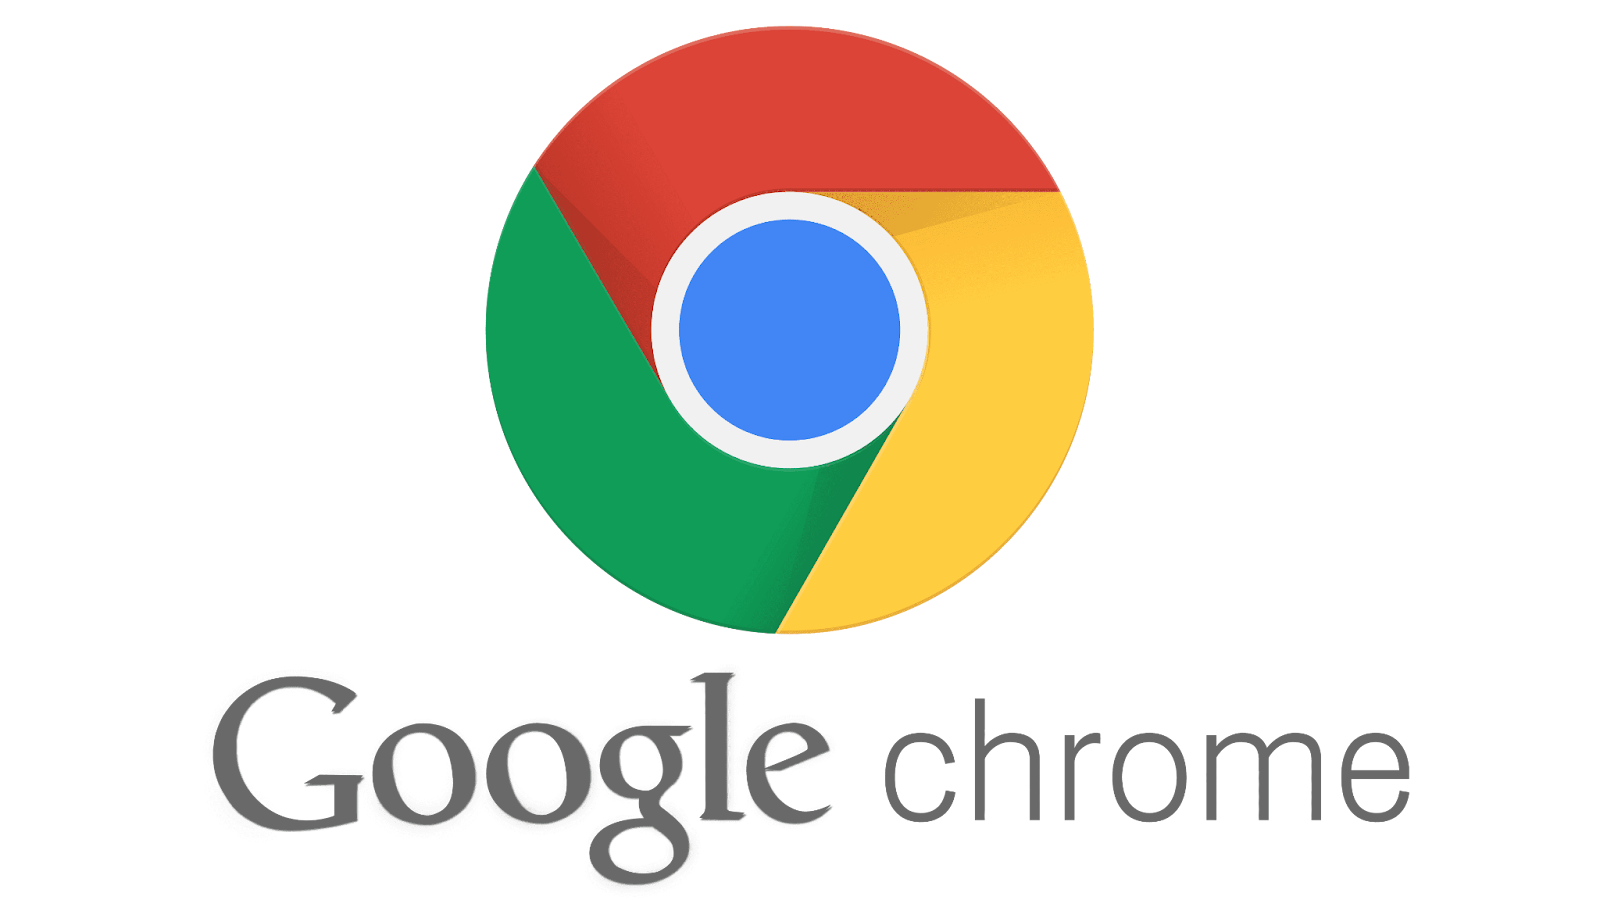 Google Chrome - Nhanh chóng, an toàn và tùy chỉnh linh hoạt